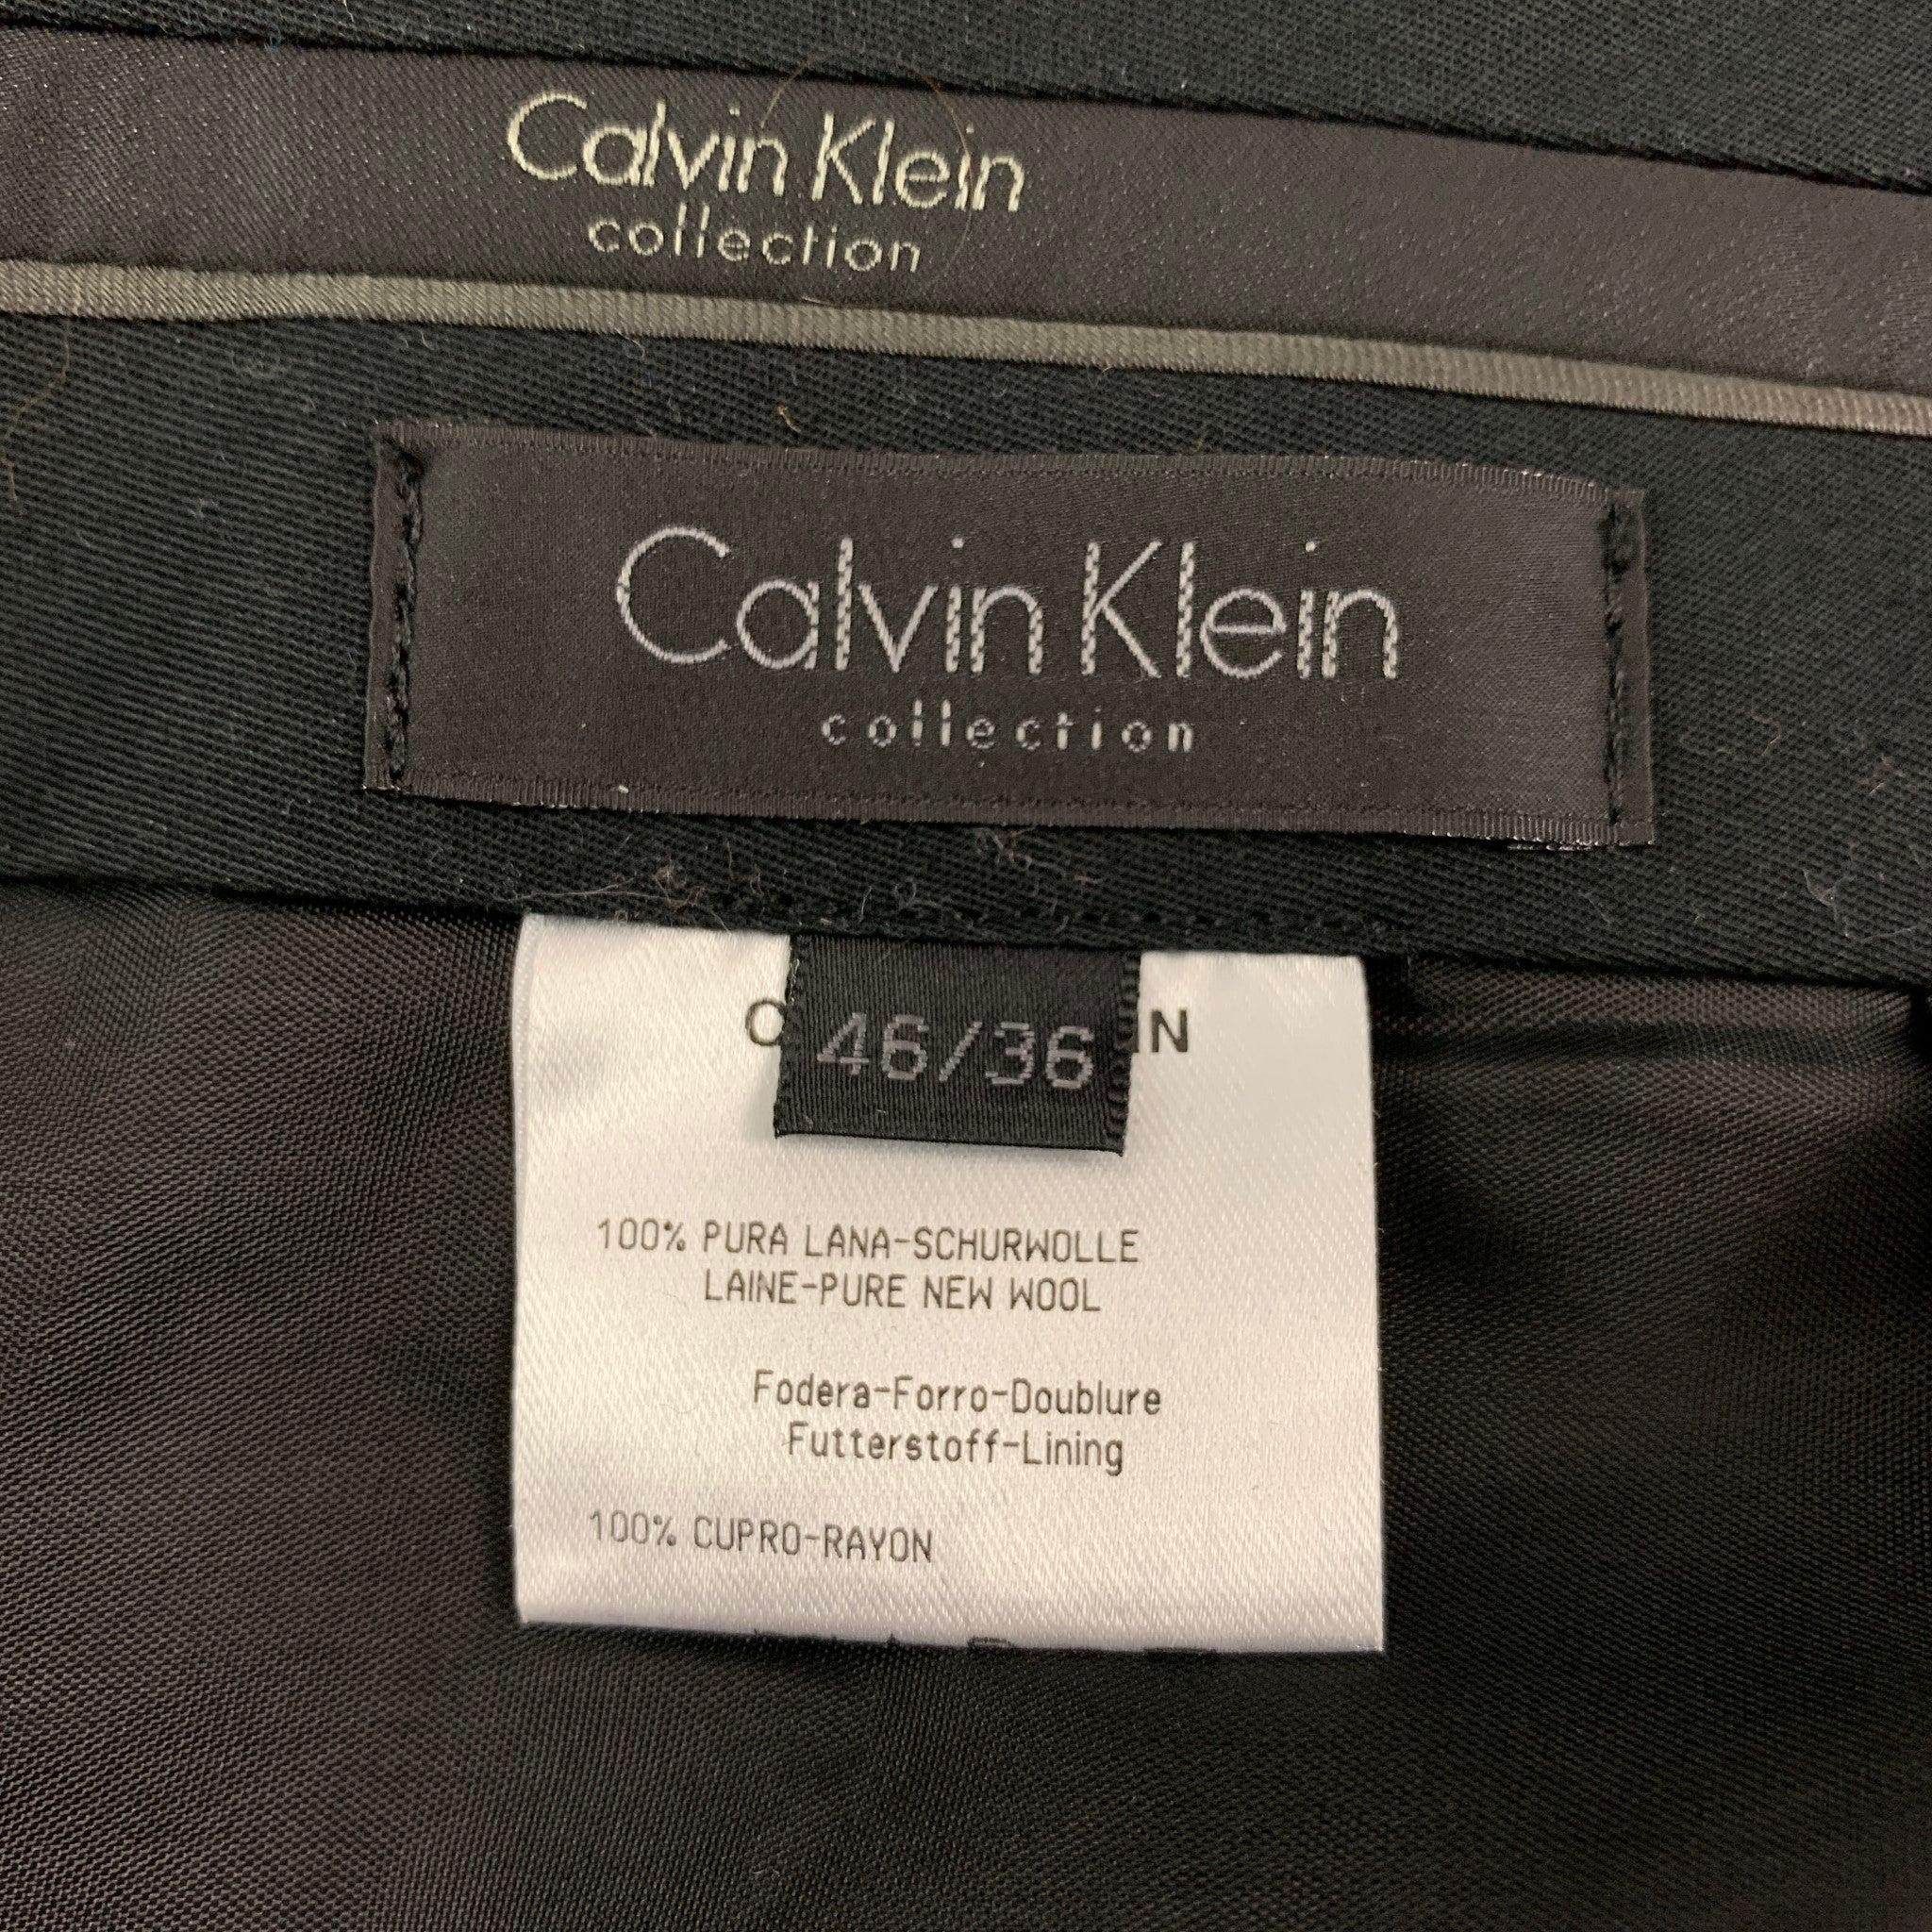 CALVIN KLEIN COLLECTION Size 36 Black Wool Notch Lapel Tuxedo Suit For Sale 6